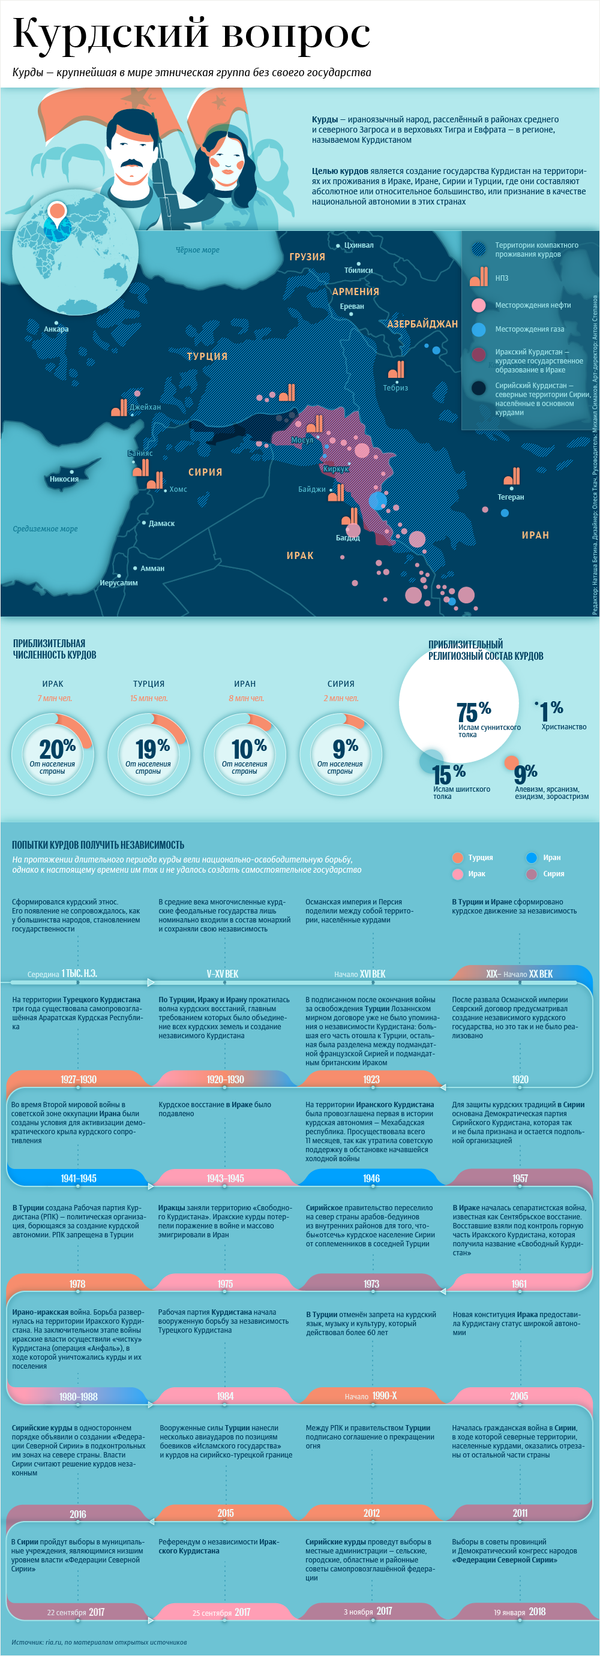 Кто такие курды – инфографика на sputnik.by - Sputnik Беларусь